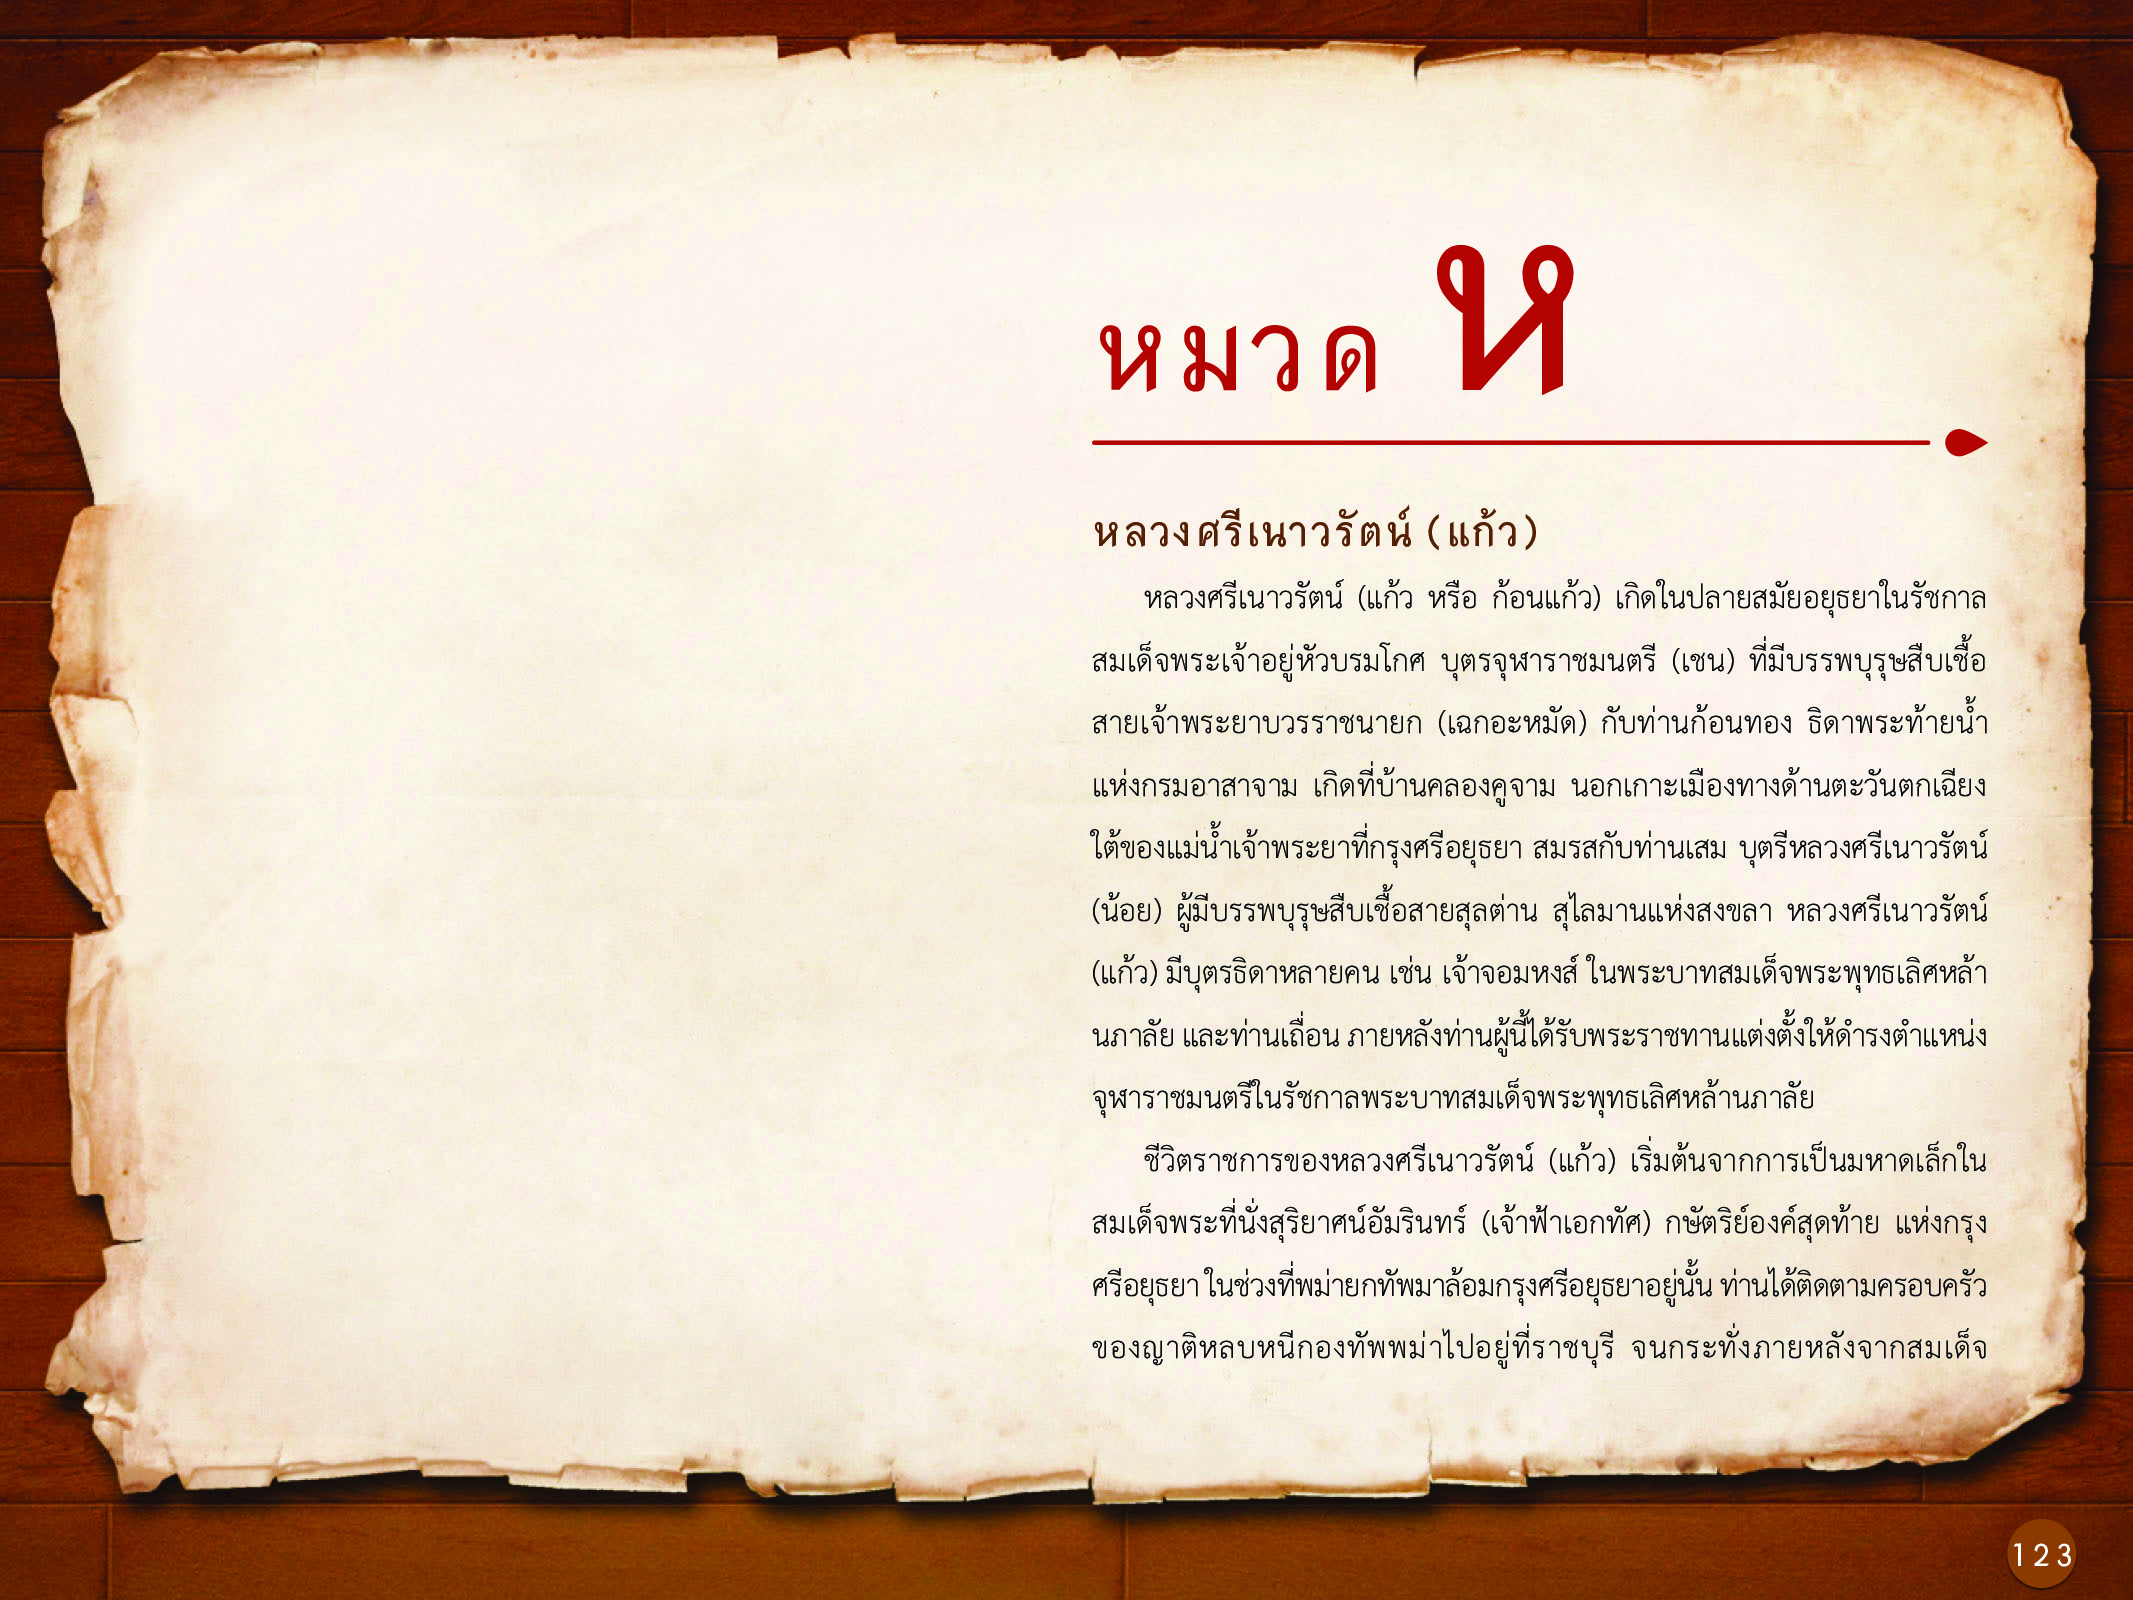 ประวัติศาสตร์กรุงธนบุรี ./images/history_dhonburi/123.jpg